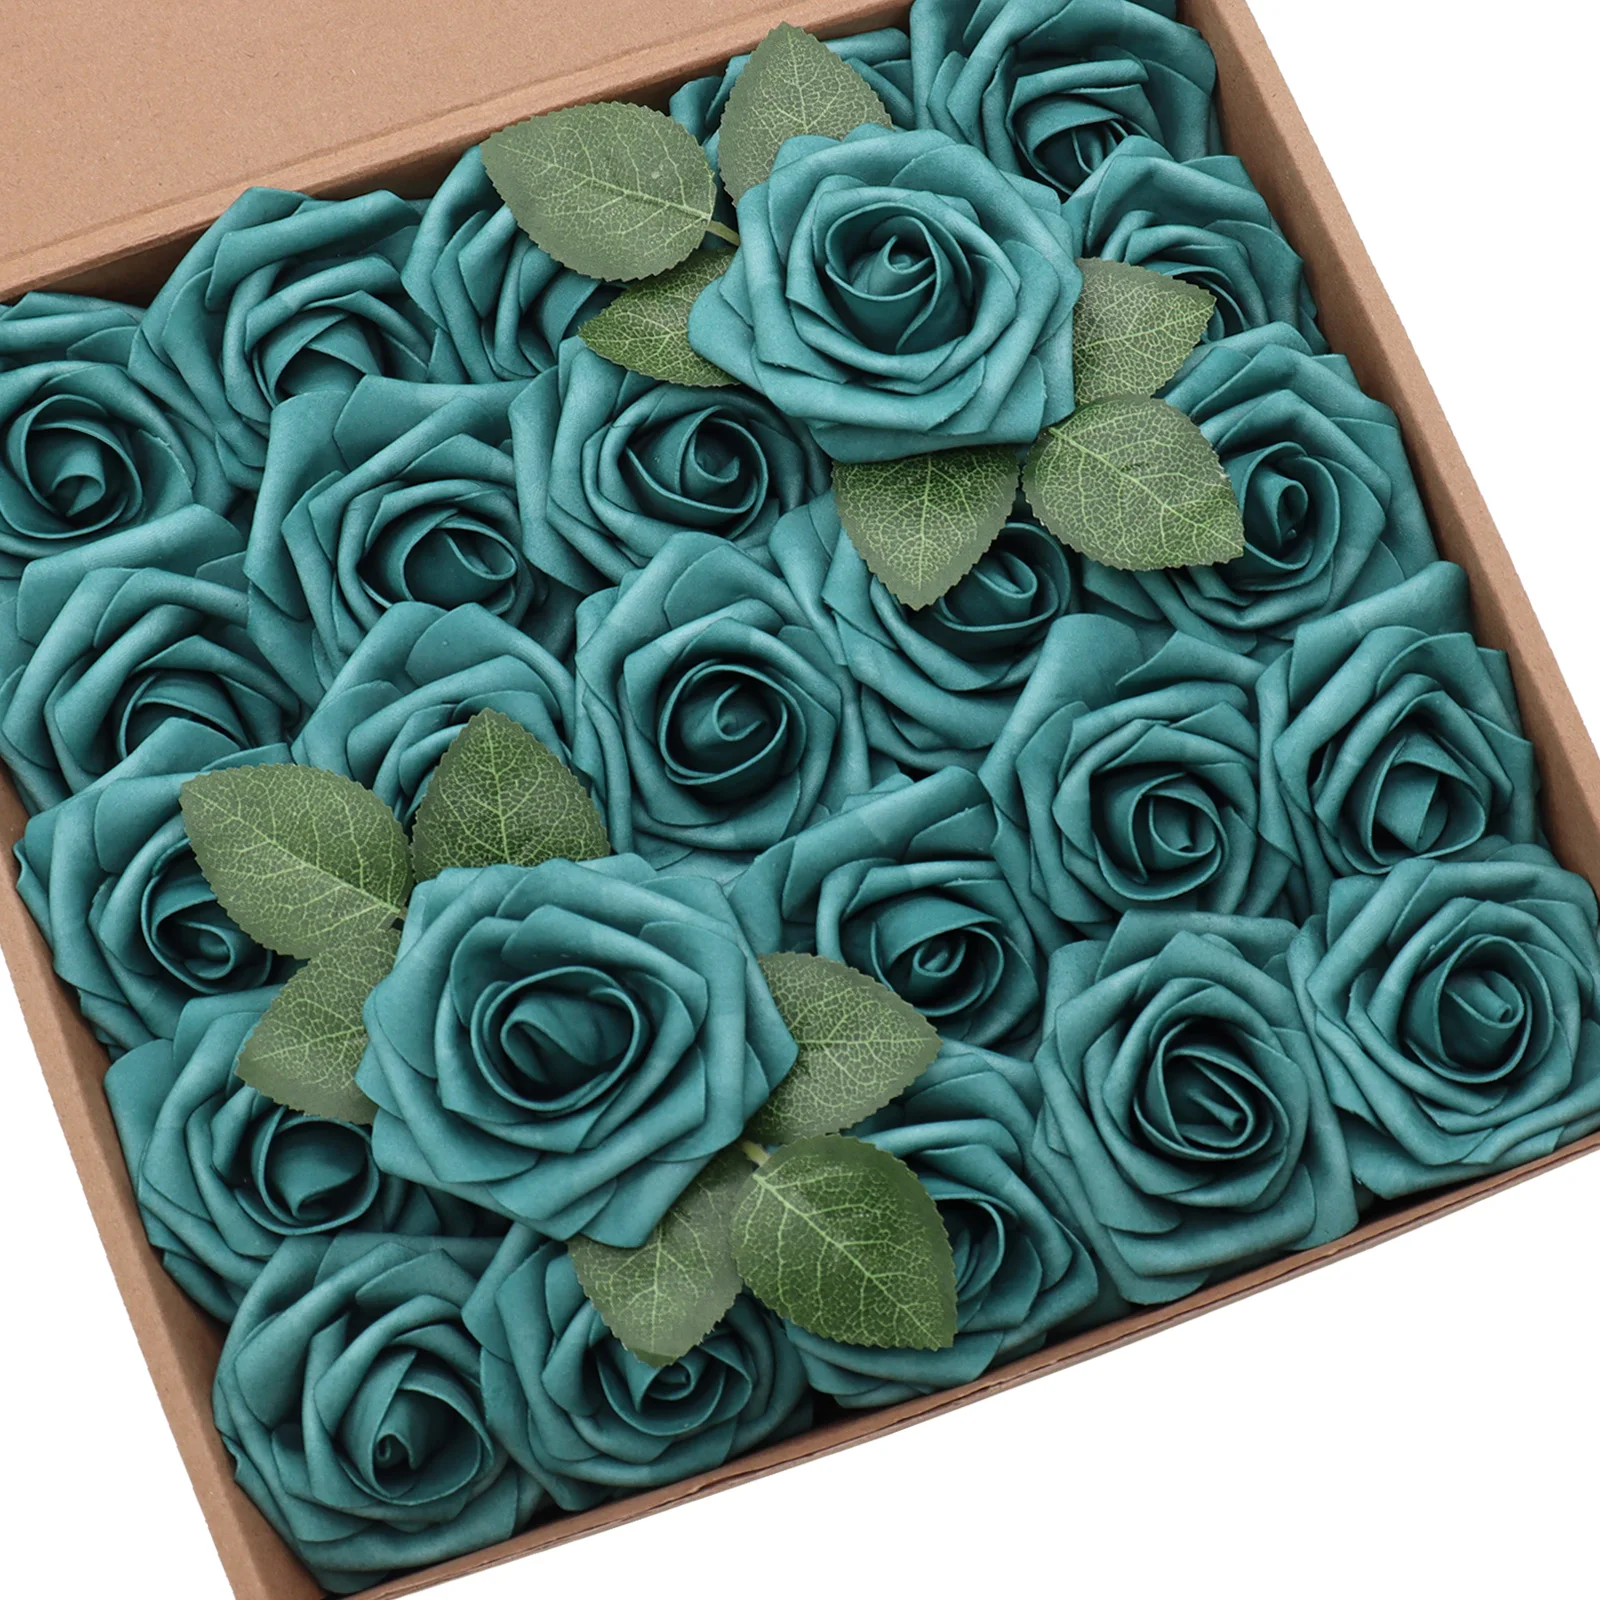 

D-Seven Artificial Flowers 25/50pcs Teal Roses with Stem for DIY Wedding Centerpieces Bouquets Arrangements Flower Decorations